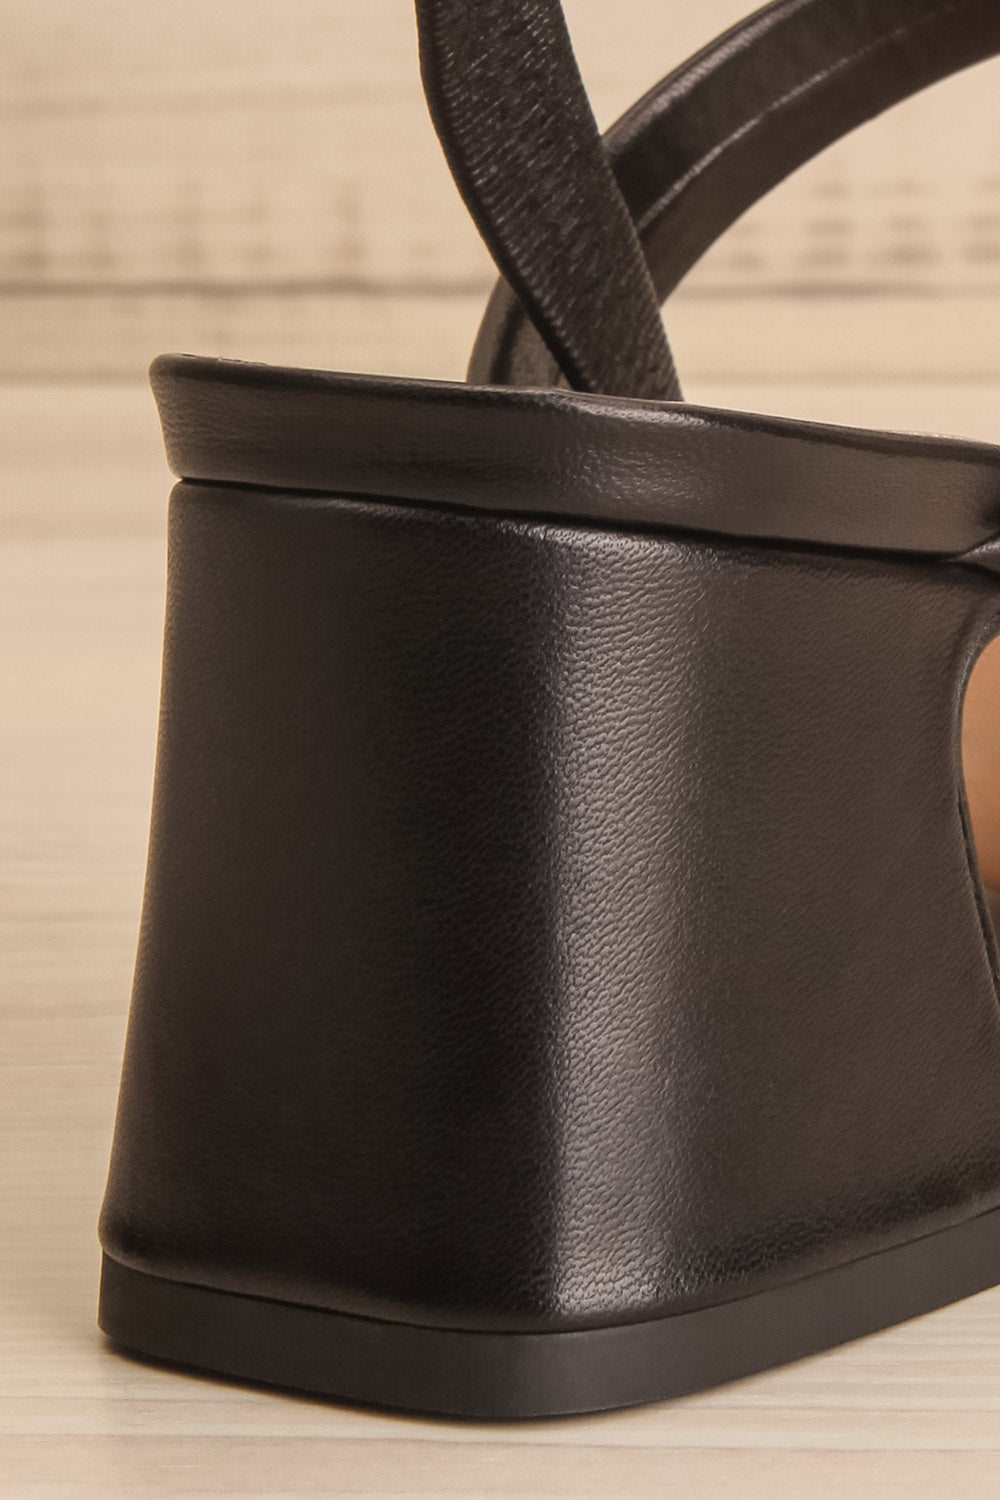 Cubisme Strappy Block Heel leather Sandals | La petite garçonne back close-up